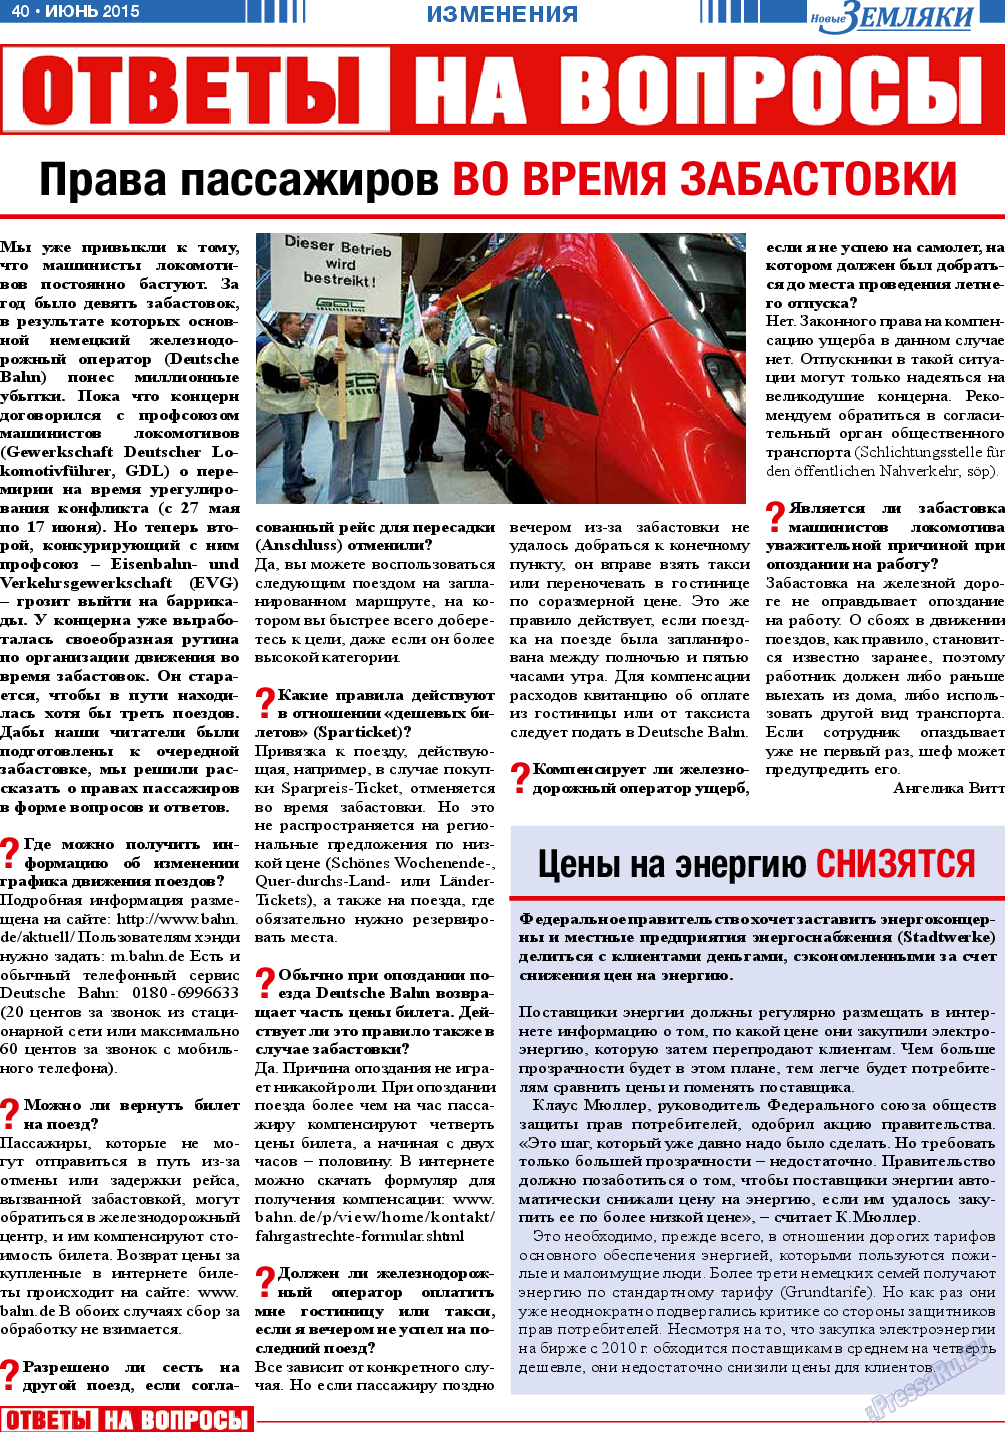 Новые Земляки, газета. 2015 №6 стр.40